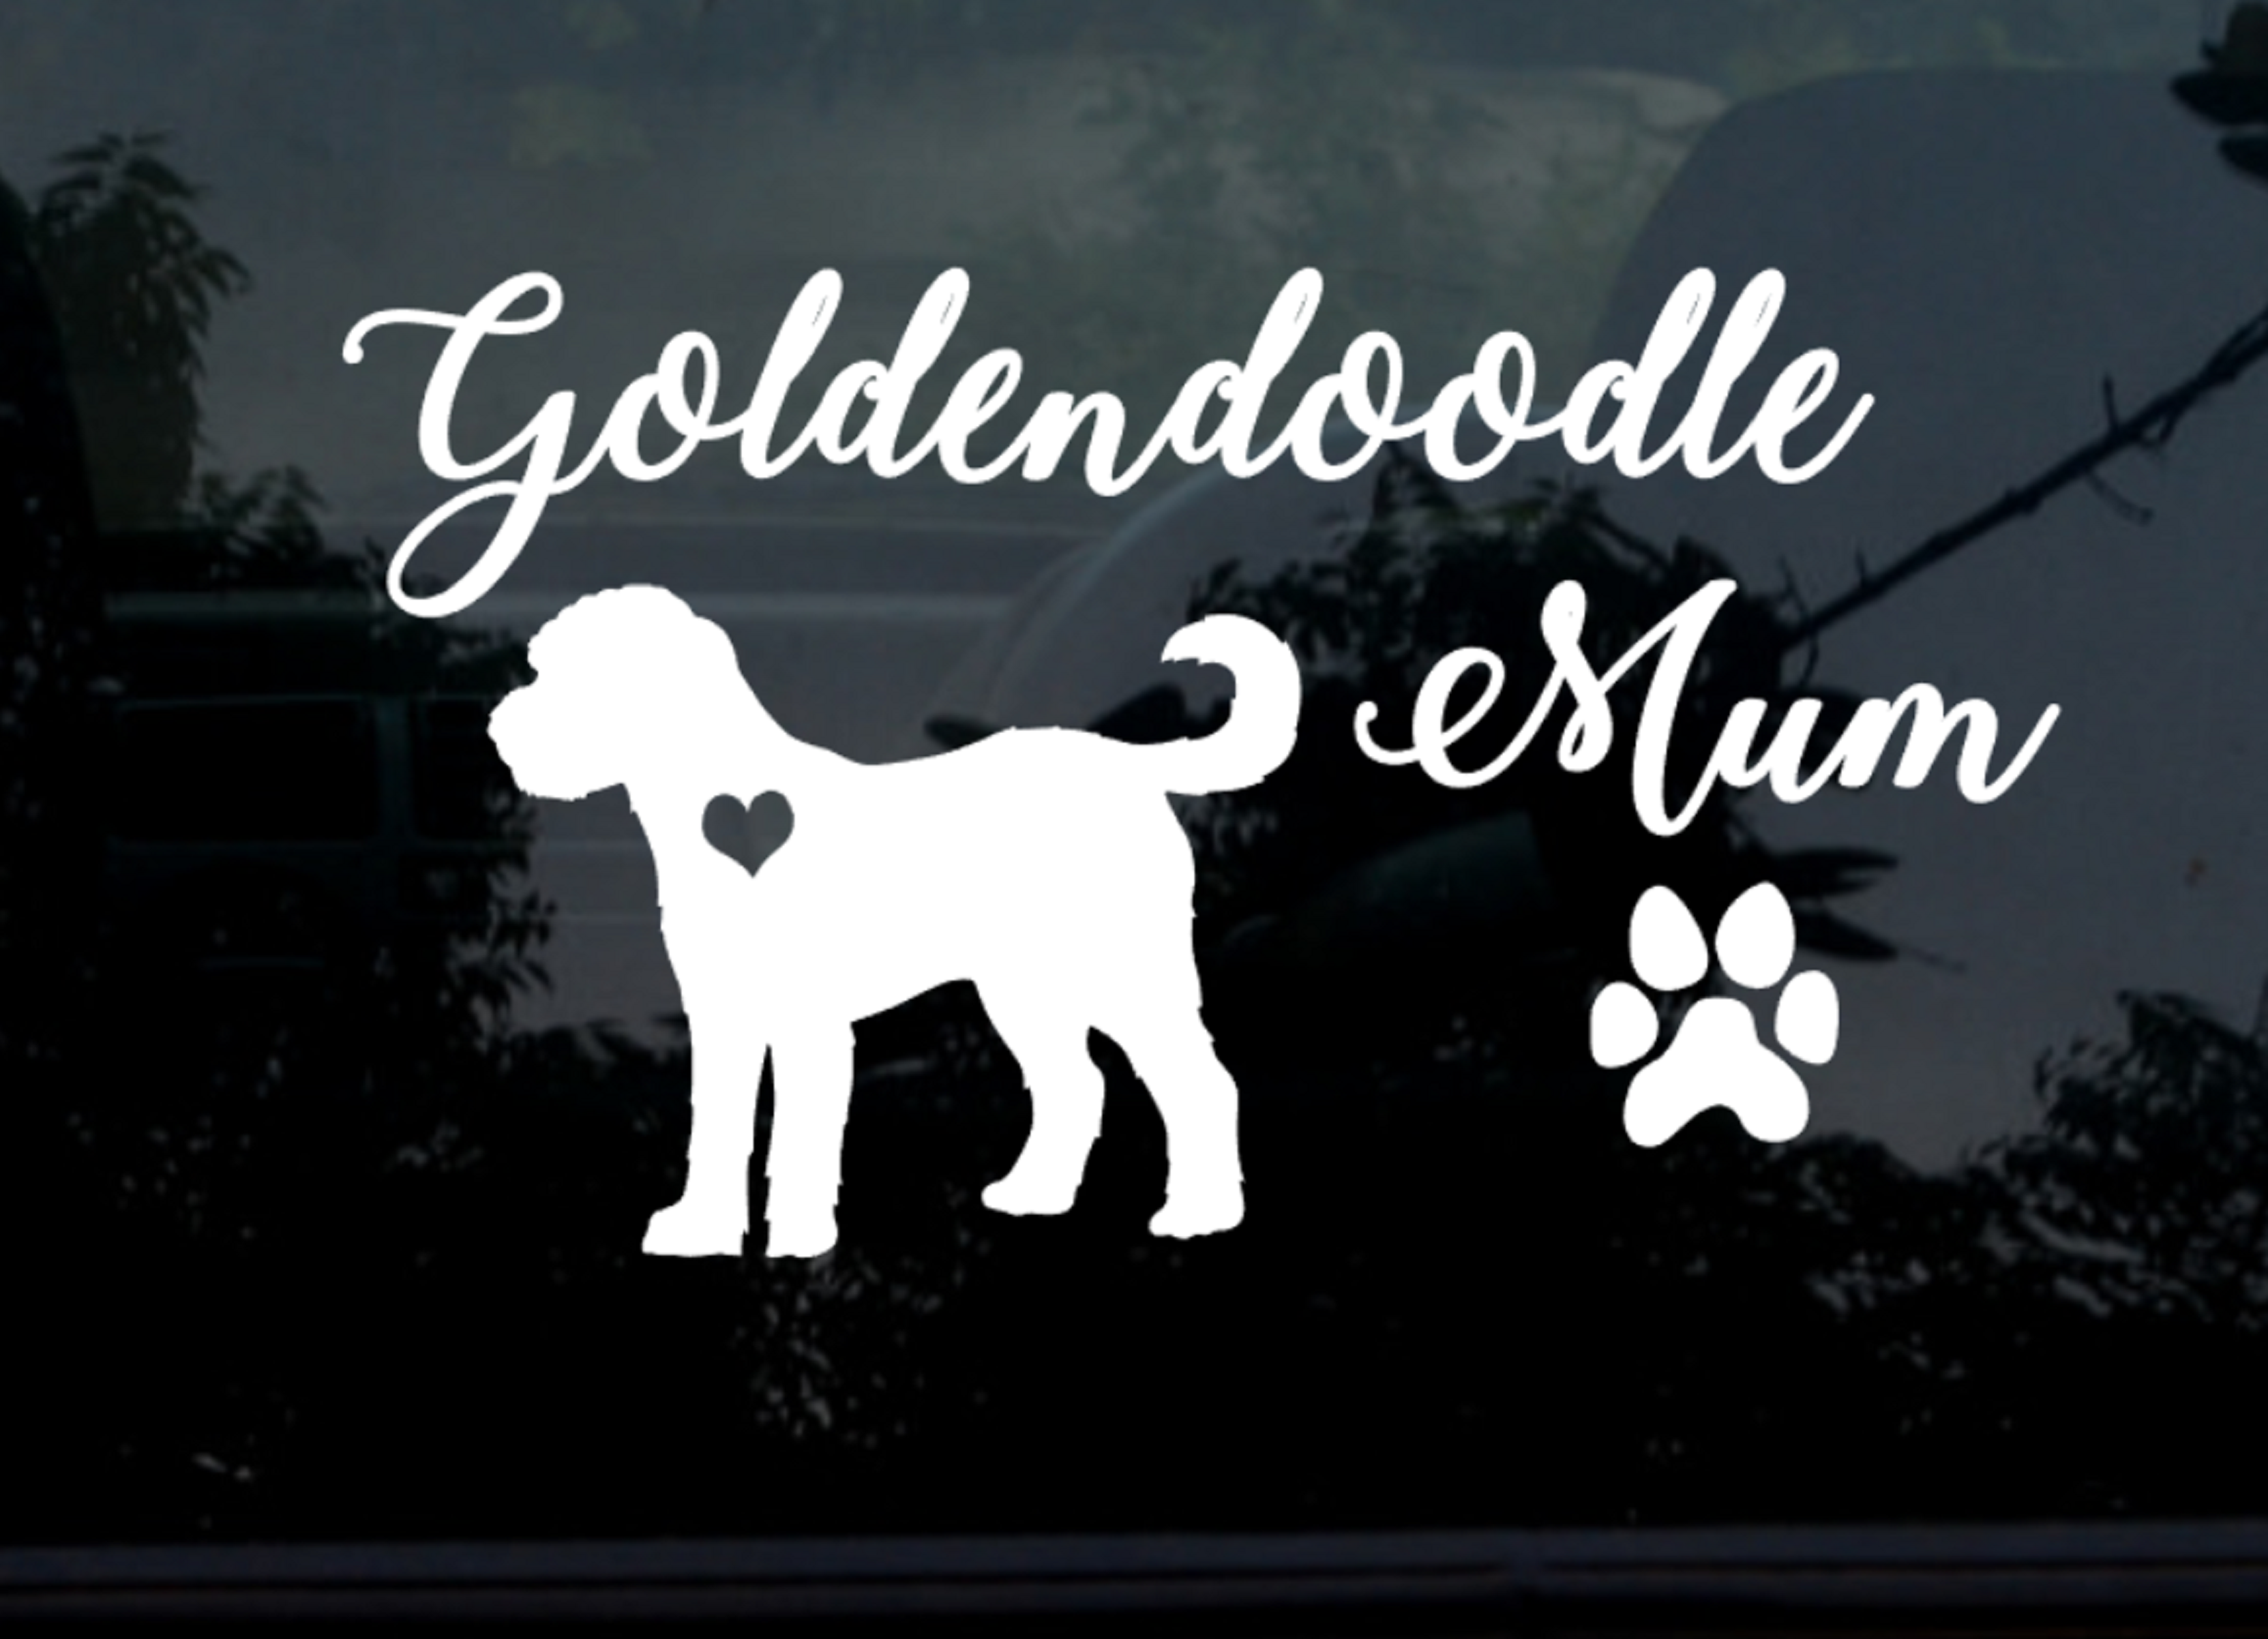 GoldenDoodle Mum car sticker